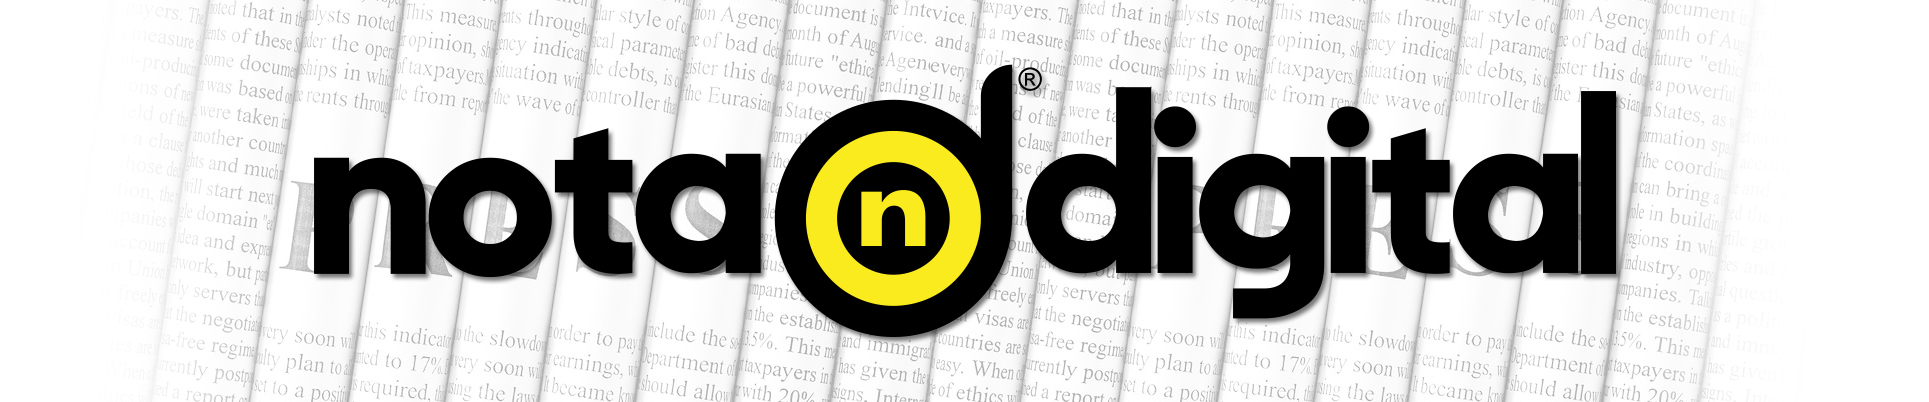 NOTA DIGITAL, Revista Digital Global de información sobre tecnología, web y consejos útiles.